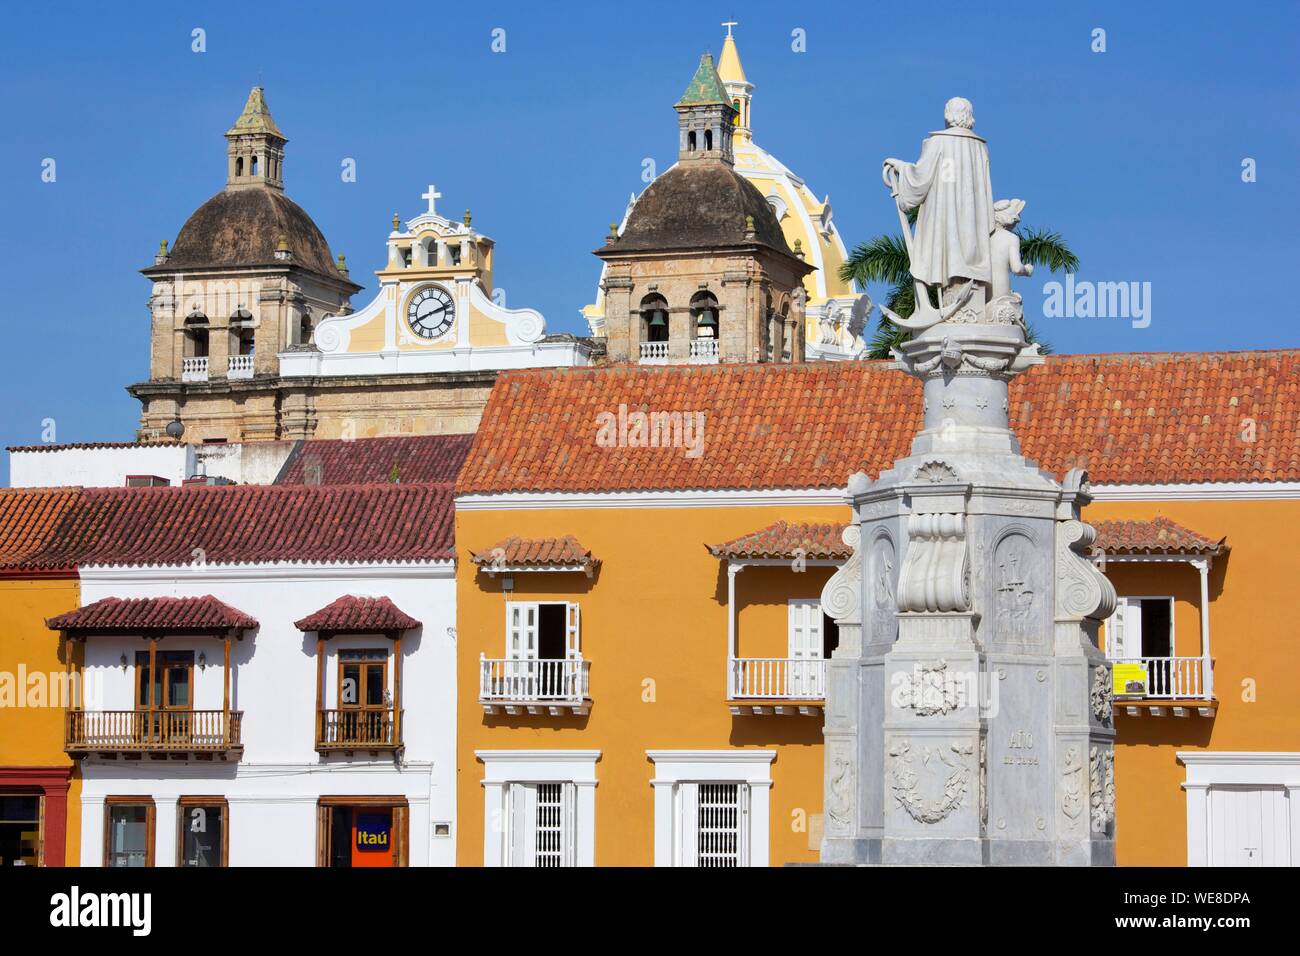 La Colombie, Département de Bolivar, Carthagène, inscrite au patrimoine mondial de l'UNESCO, colonial façades de la Plaza de San Pedro Claver situé dans la vieille ville Banque D'Images